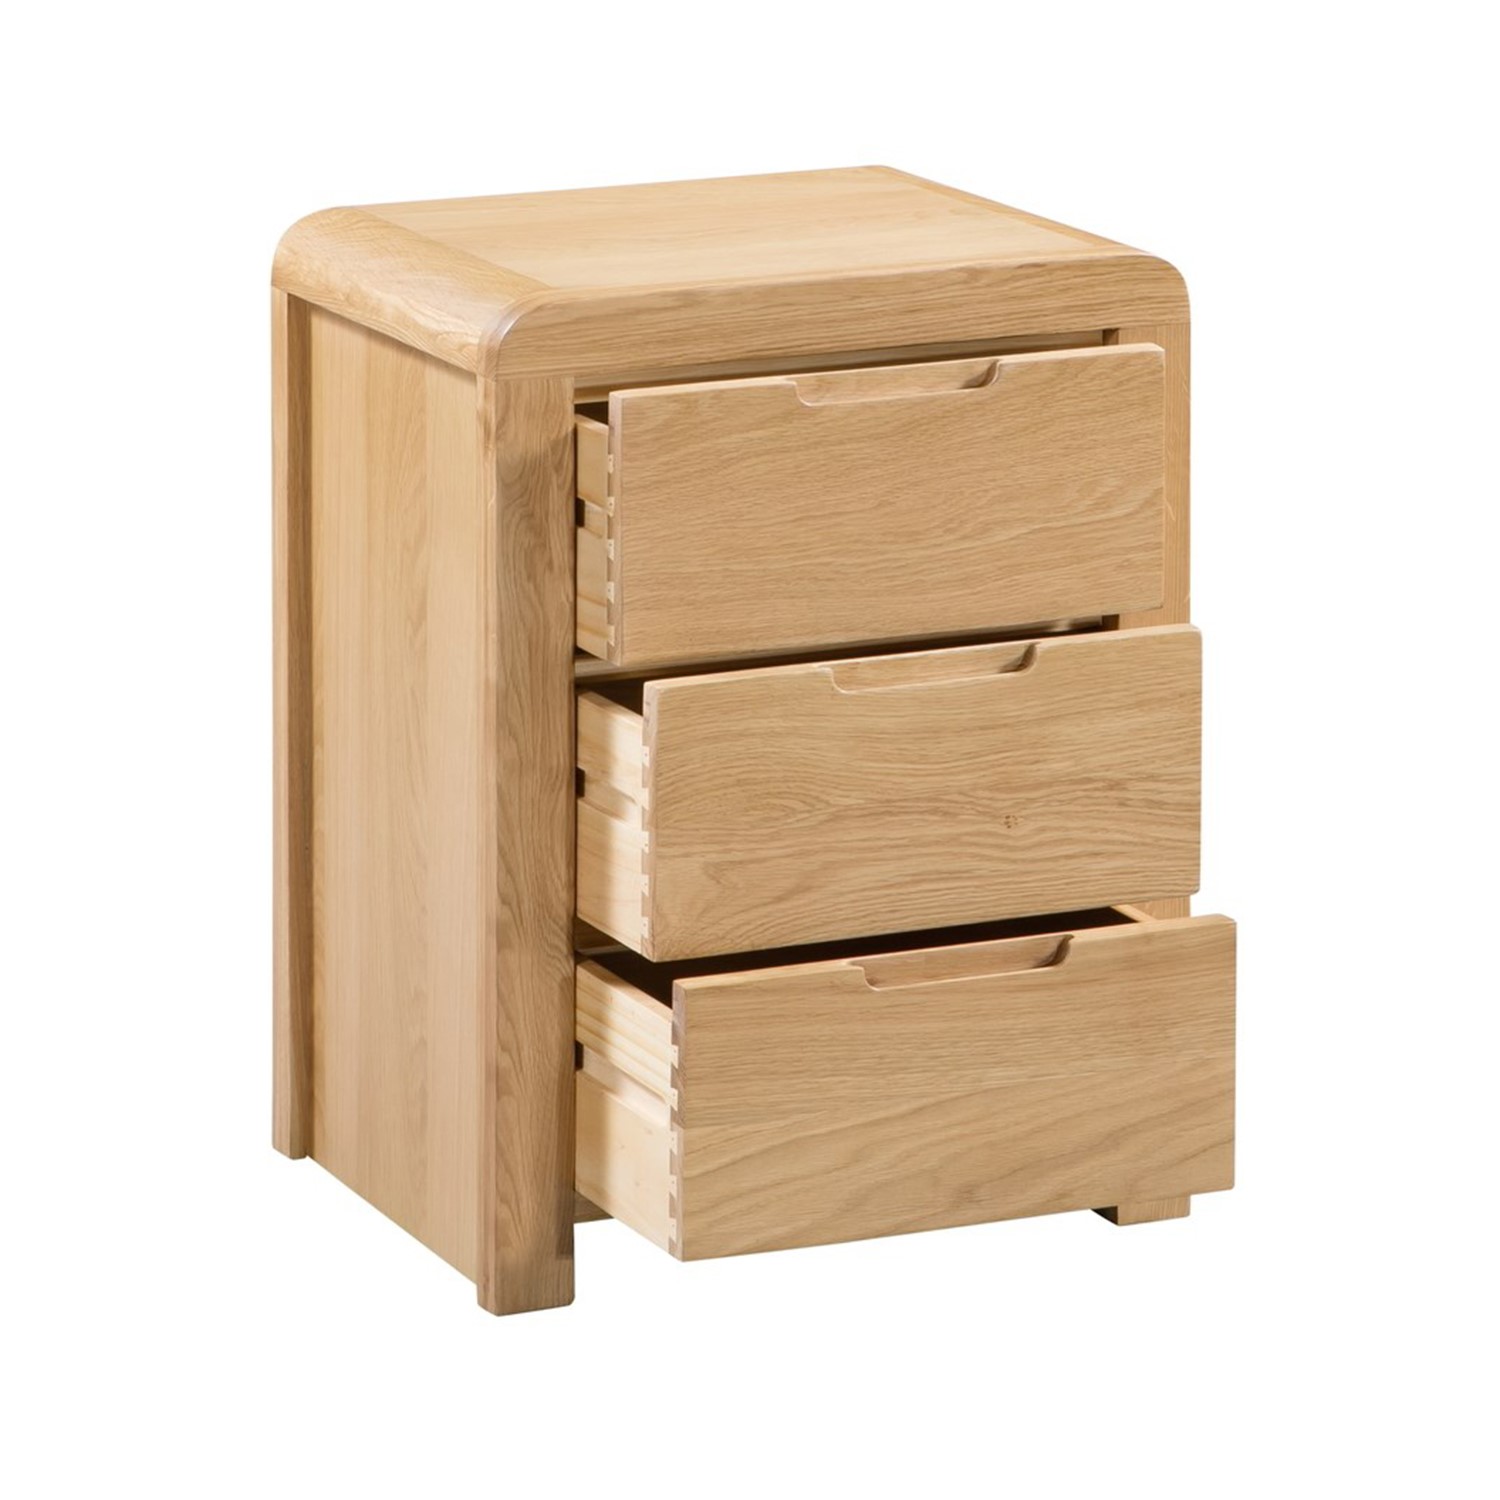 Read more about Curved oak modern 3 drawer bedside table julian bowen